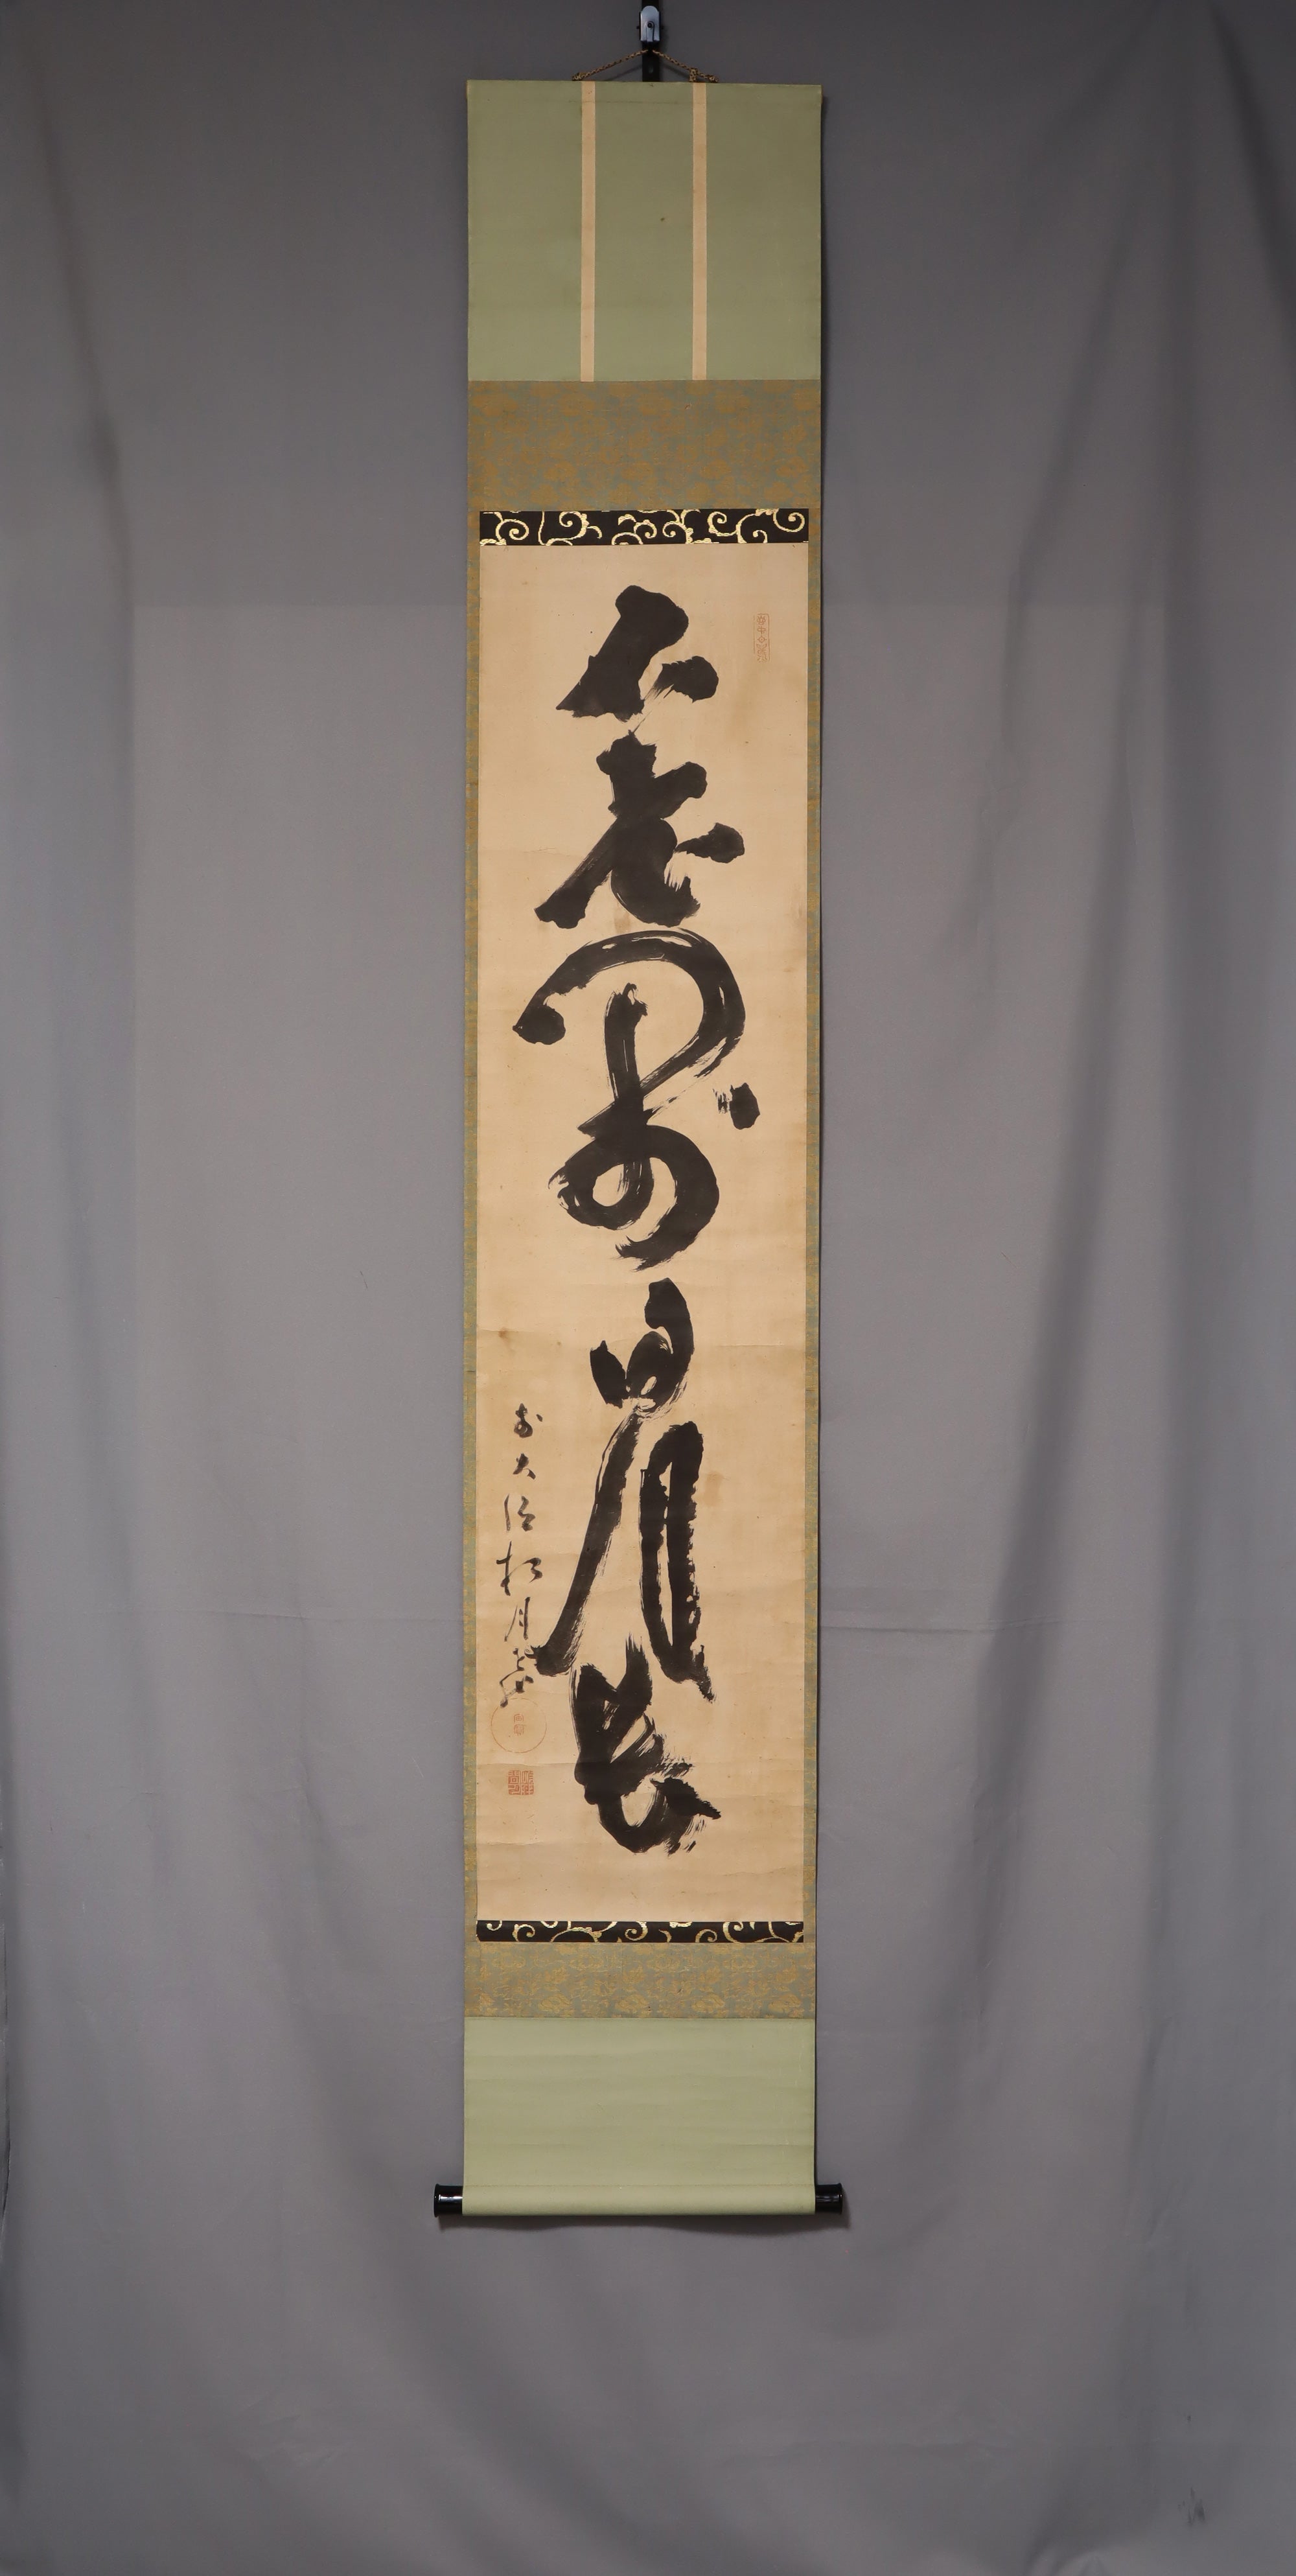 chūhōsōu（1759-1838）“